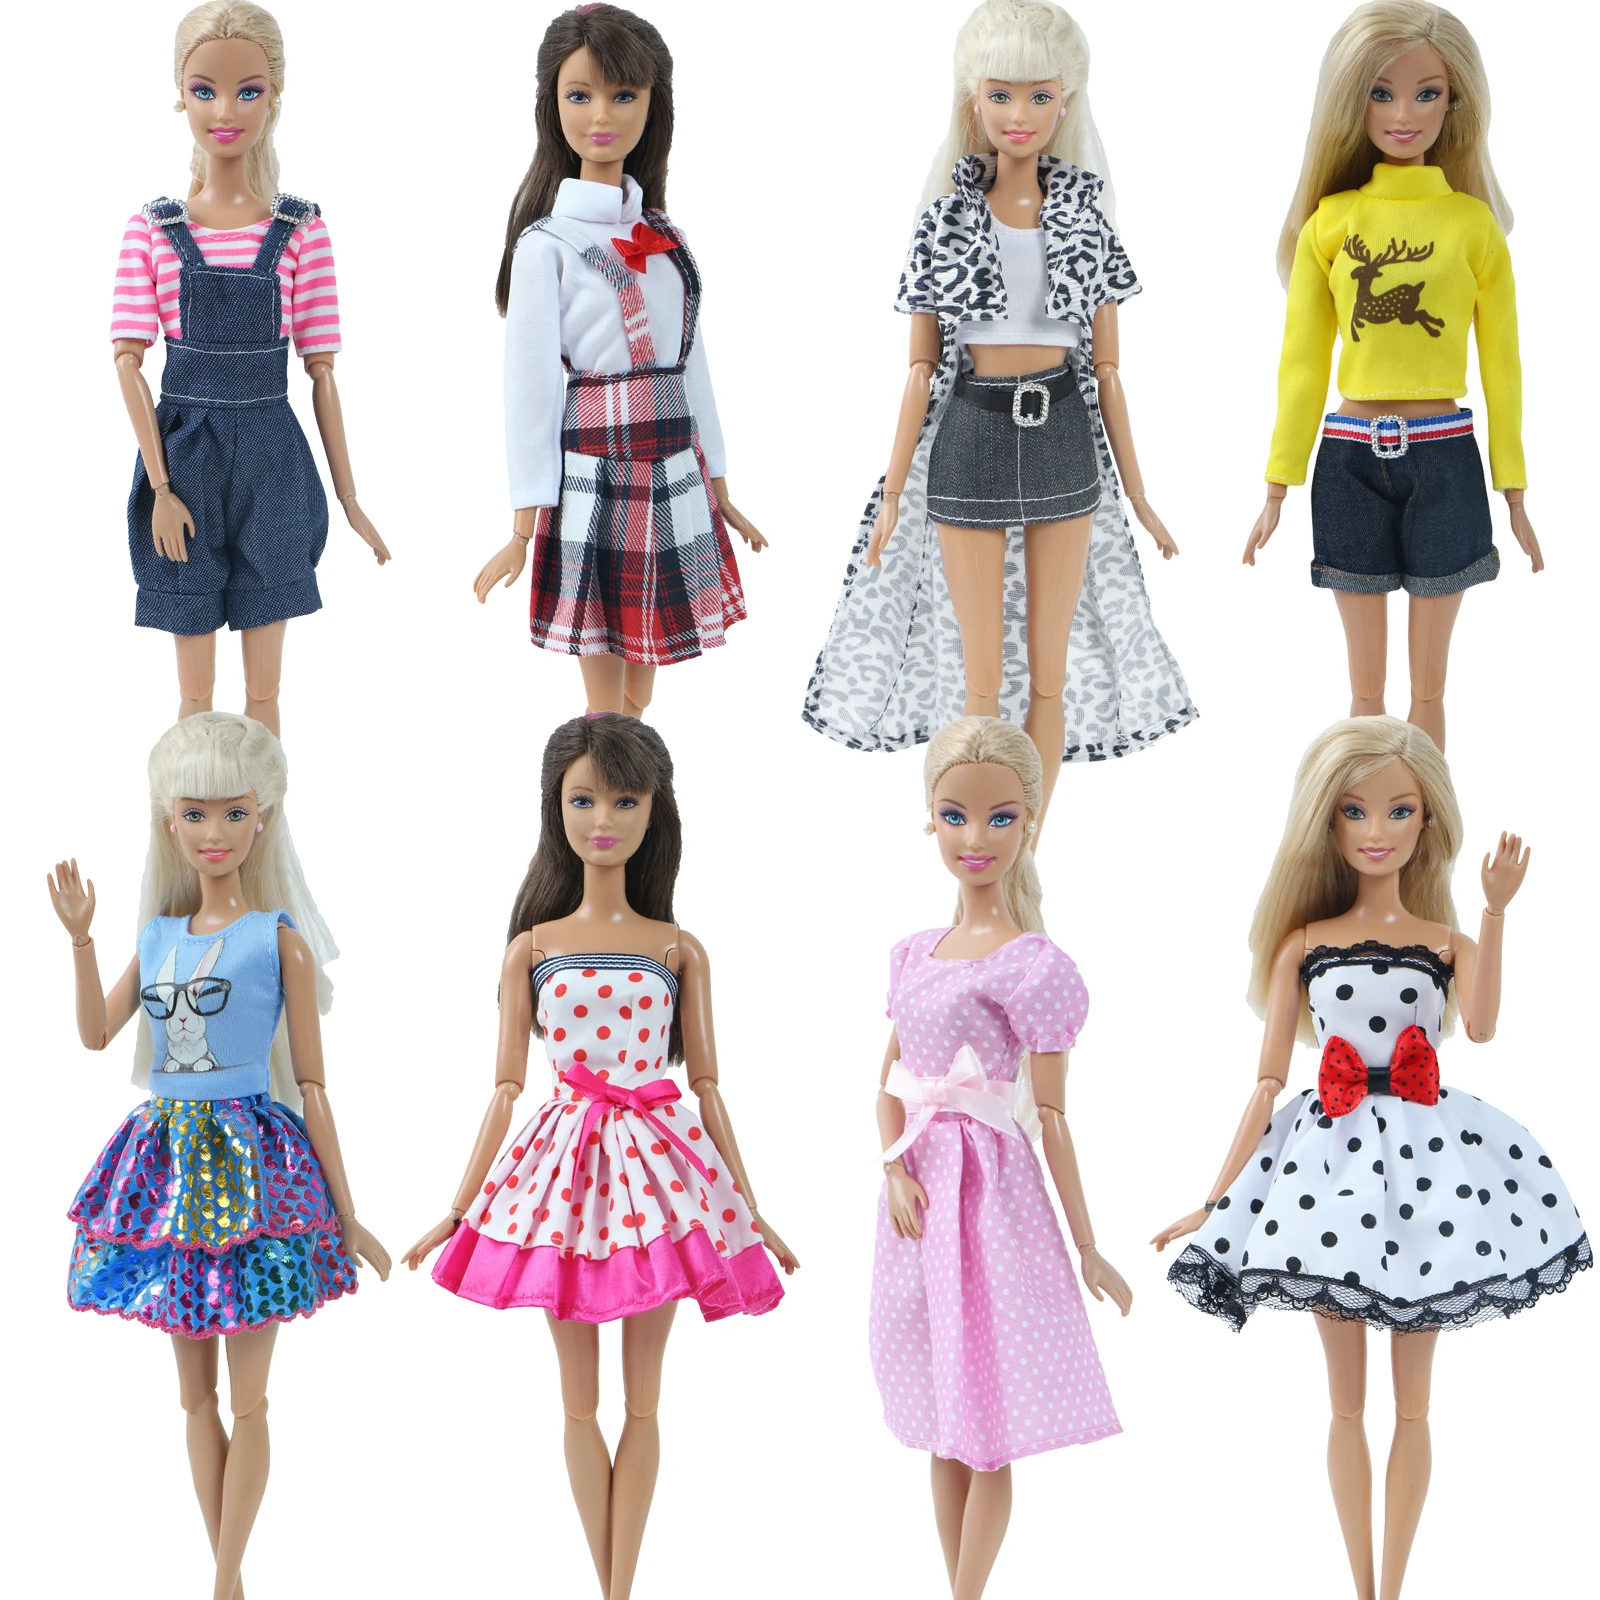 Модное платье куклы ручной работы для куклы Барби, повседневная одежда, наряд для свиданий, юбка, короткое платье, аксессуары для кукольной одежды, игрушка